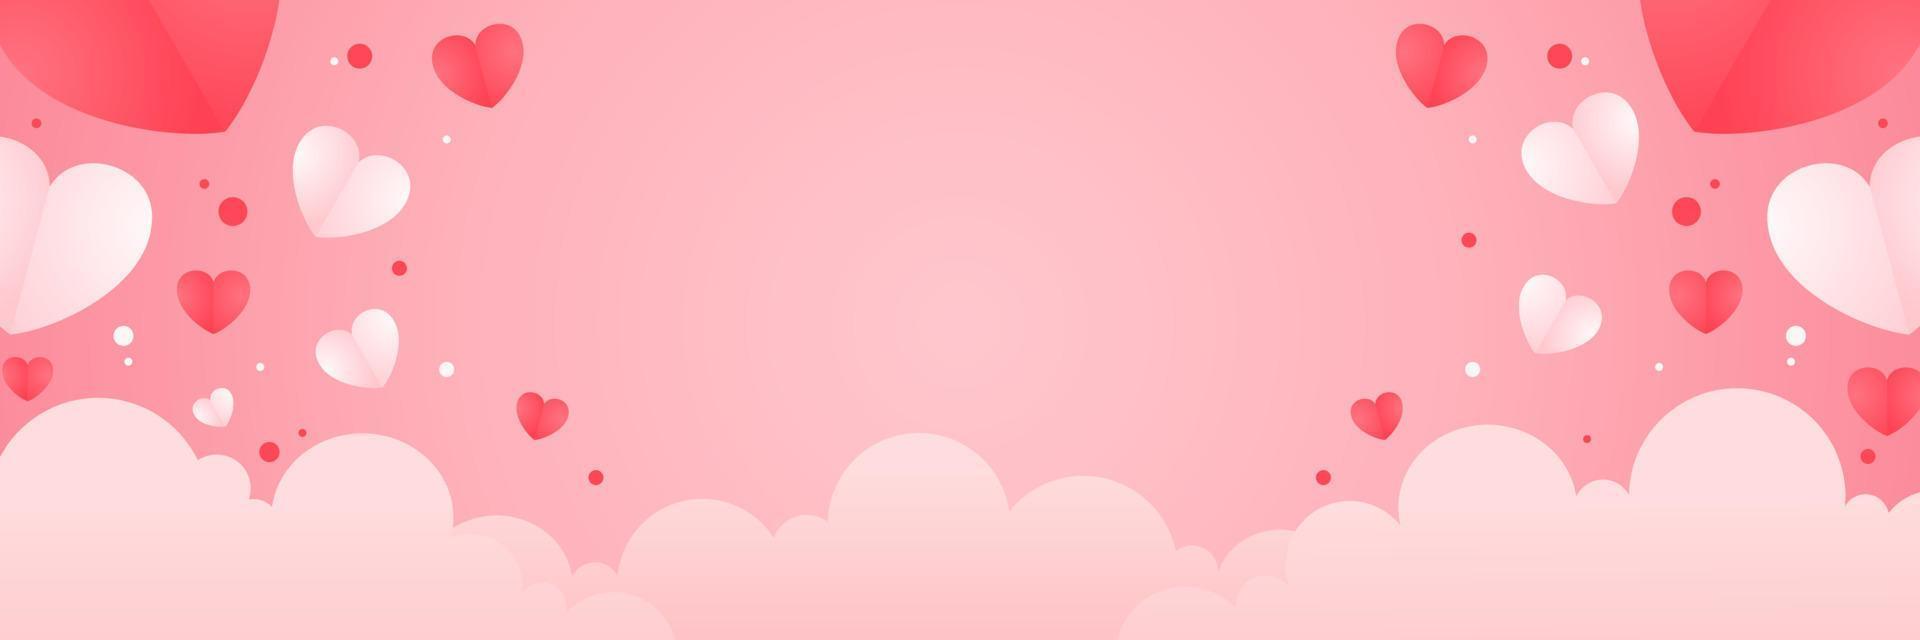 rosa hintergrund mit illustration der wolken- und herzform für valentinstagfeier und grußkarte vektor